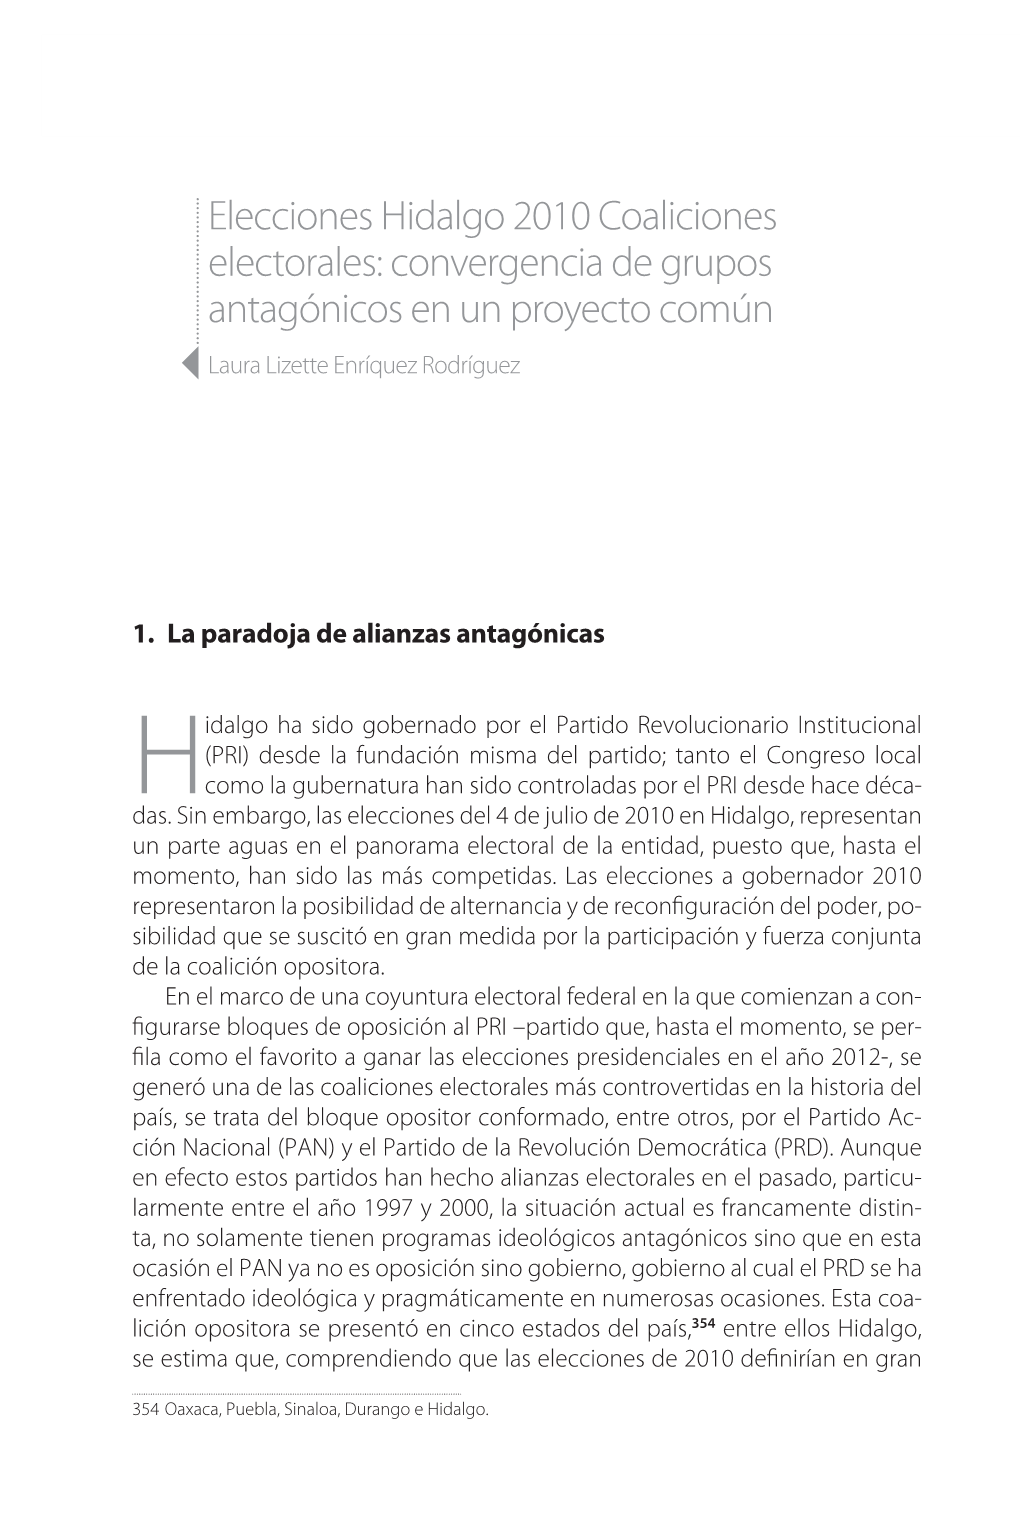 Elecciones Hidalgo 2010 Coaliciones Electorales: Convergencia De Grupos Antagónicos En Un Proyecto Común 3Laura Lizette Enríquez Rodríguez